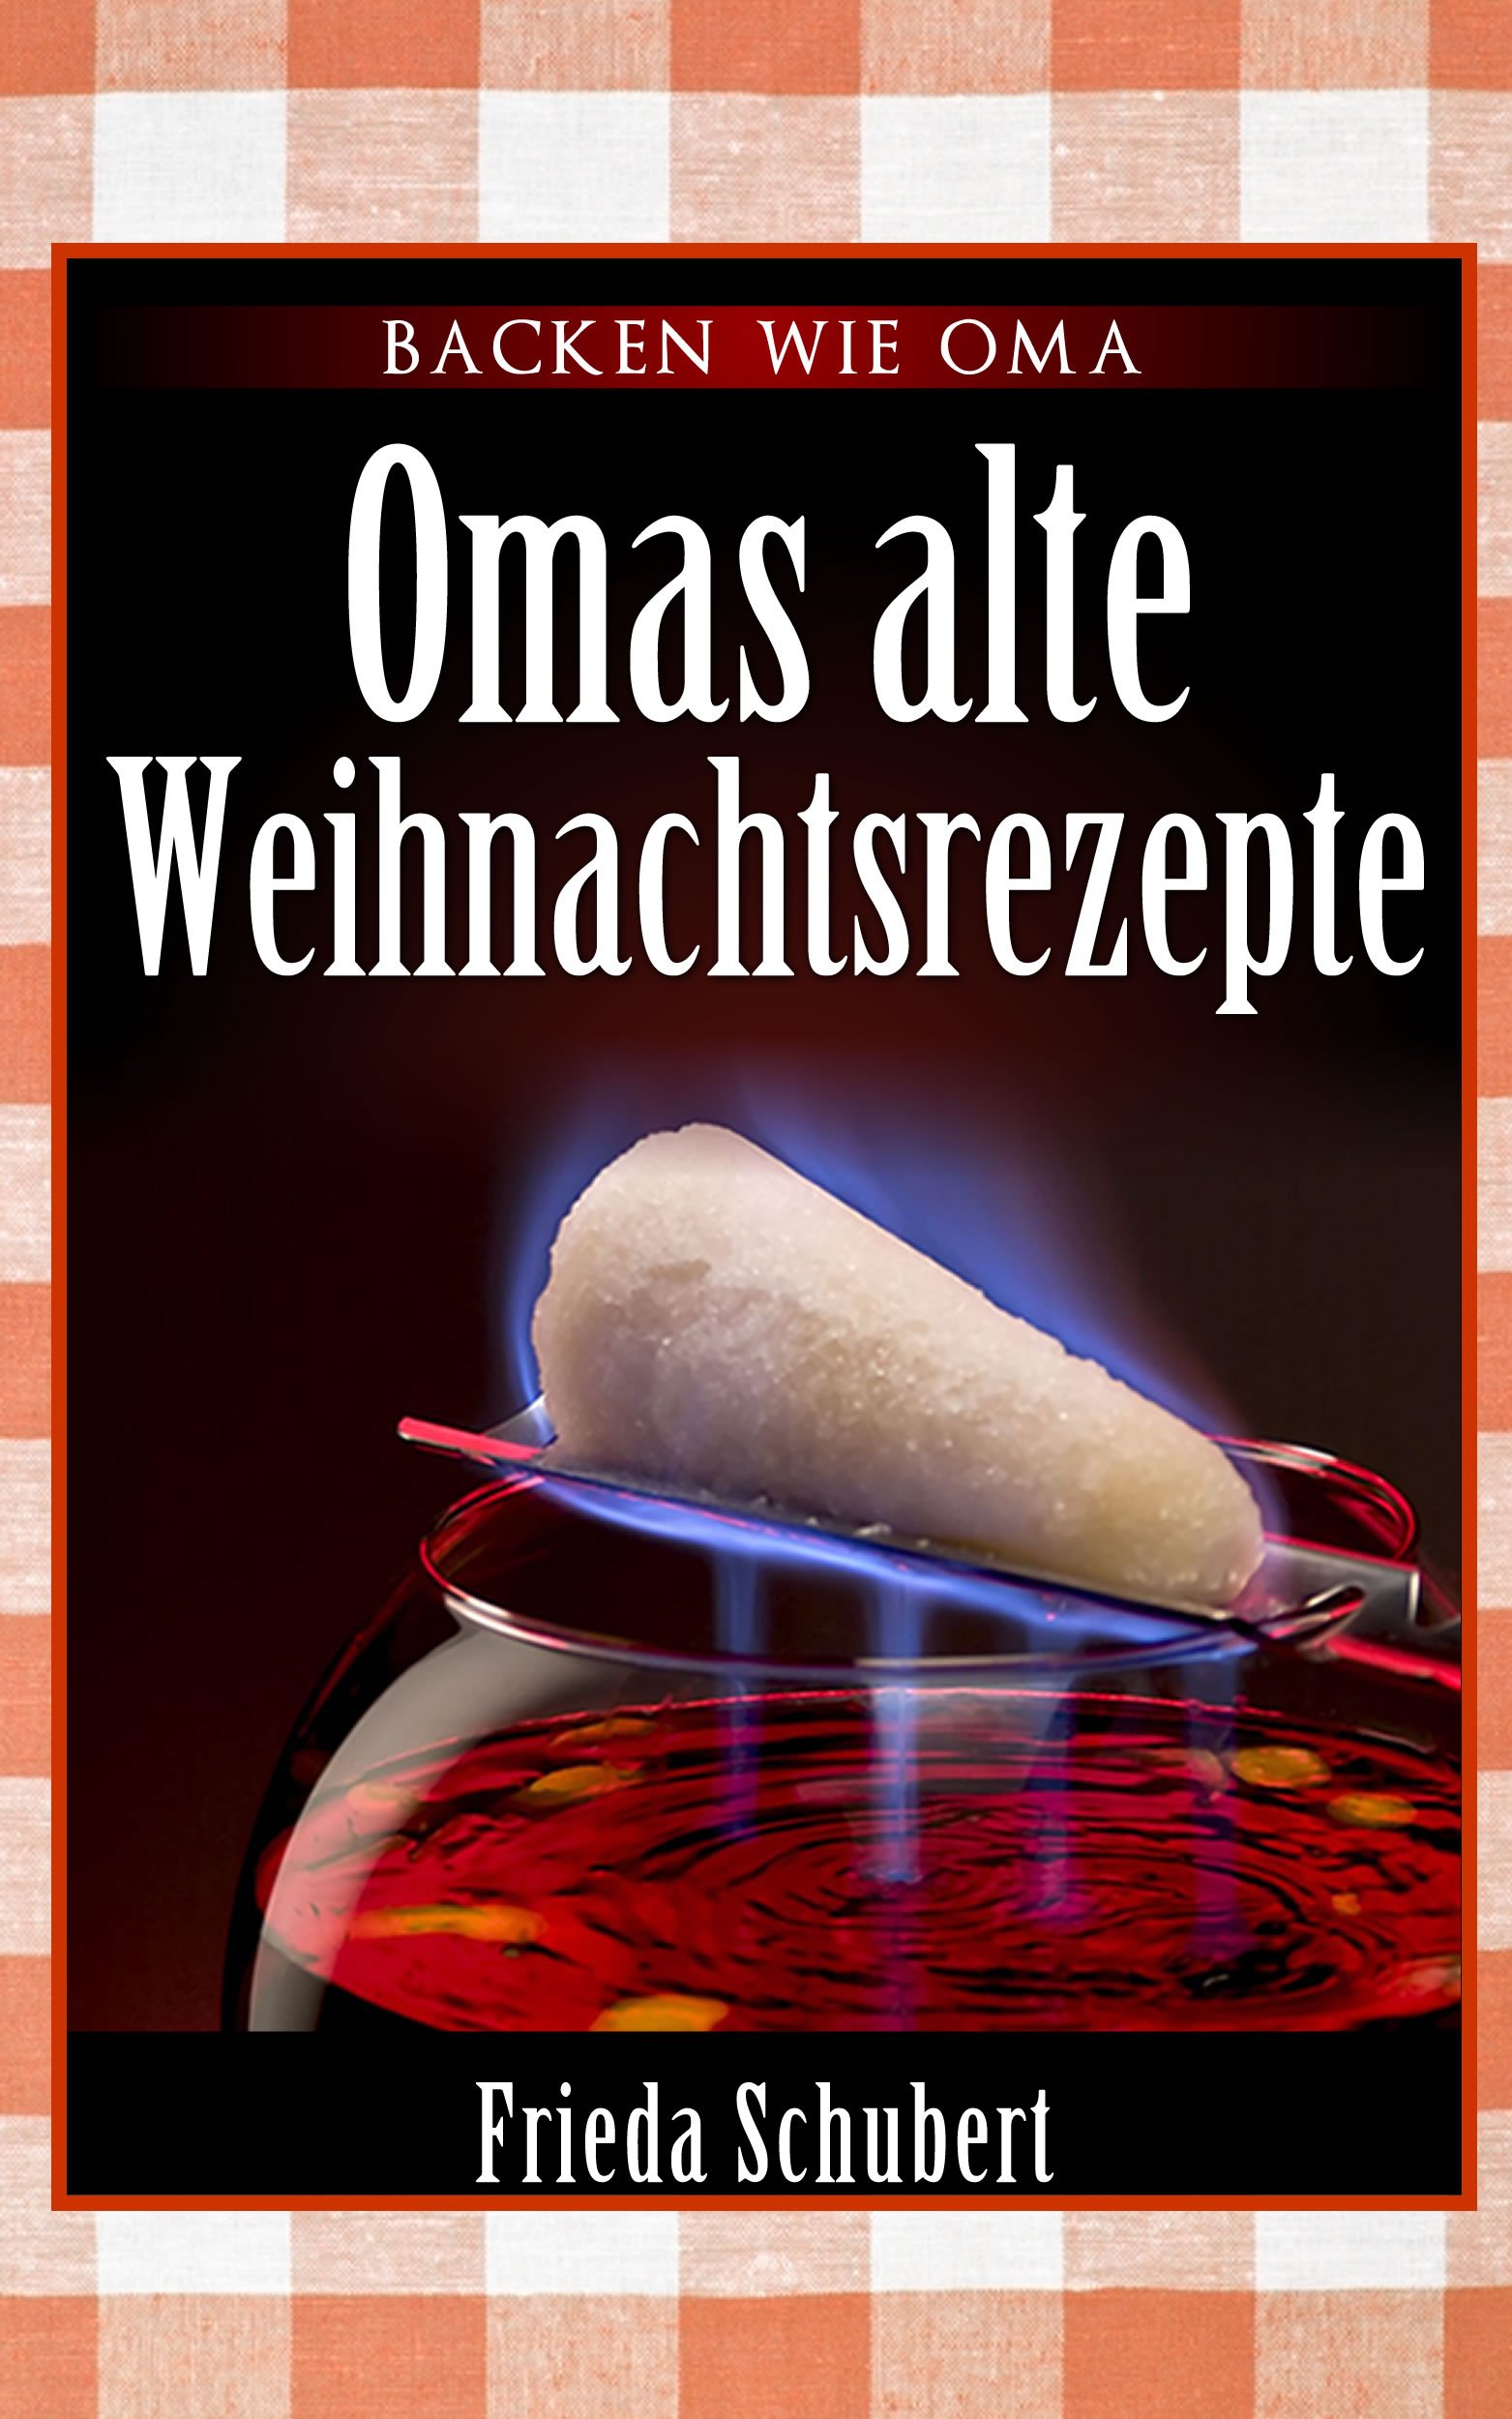 Glühwein, Feuerzangenbowle, Bratapfel und Lebkuchen-Rezepte: Omas alte Weihnachtsrezepte (German Edition)